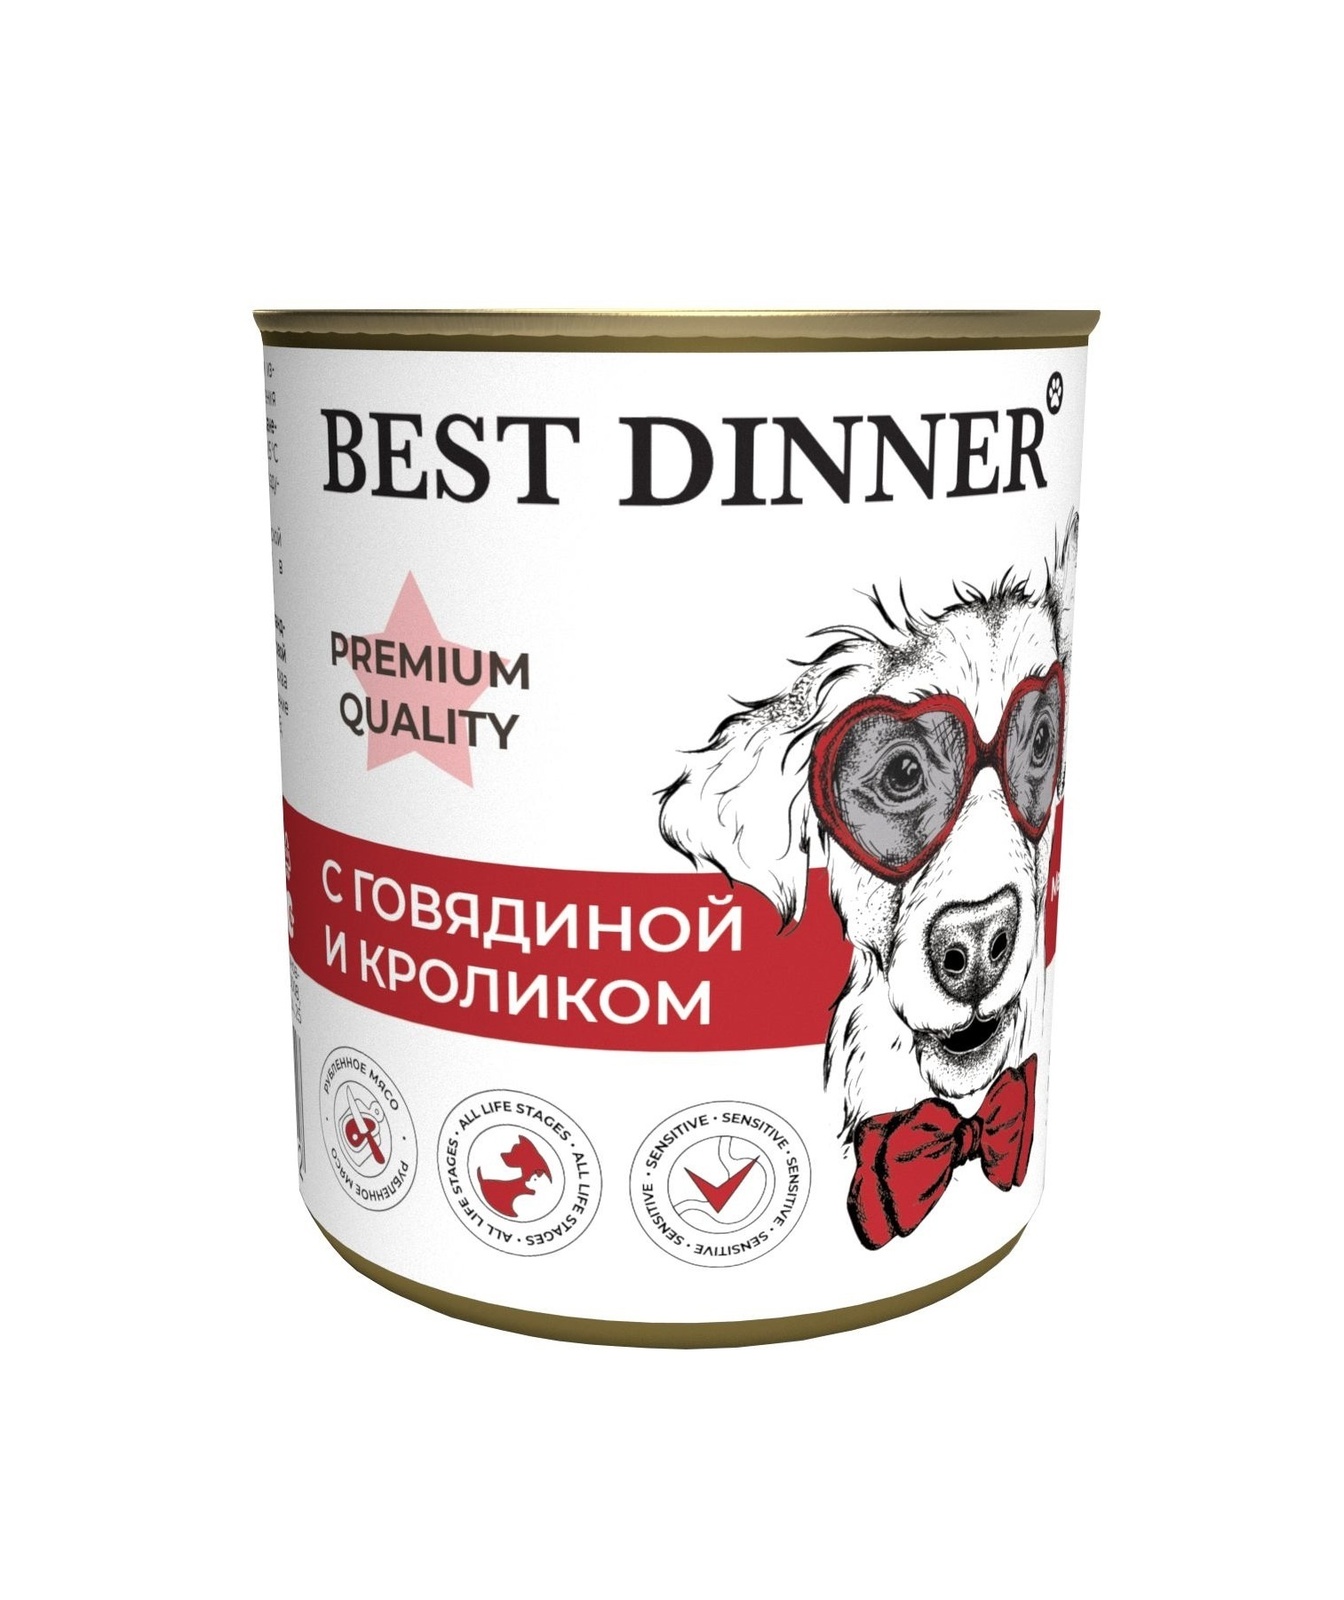 Best Dinner Best Dinner консервы Premium меню №3 С говядиной и кроликом (340 г) 42002